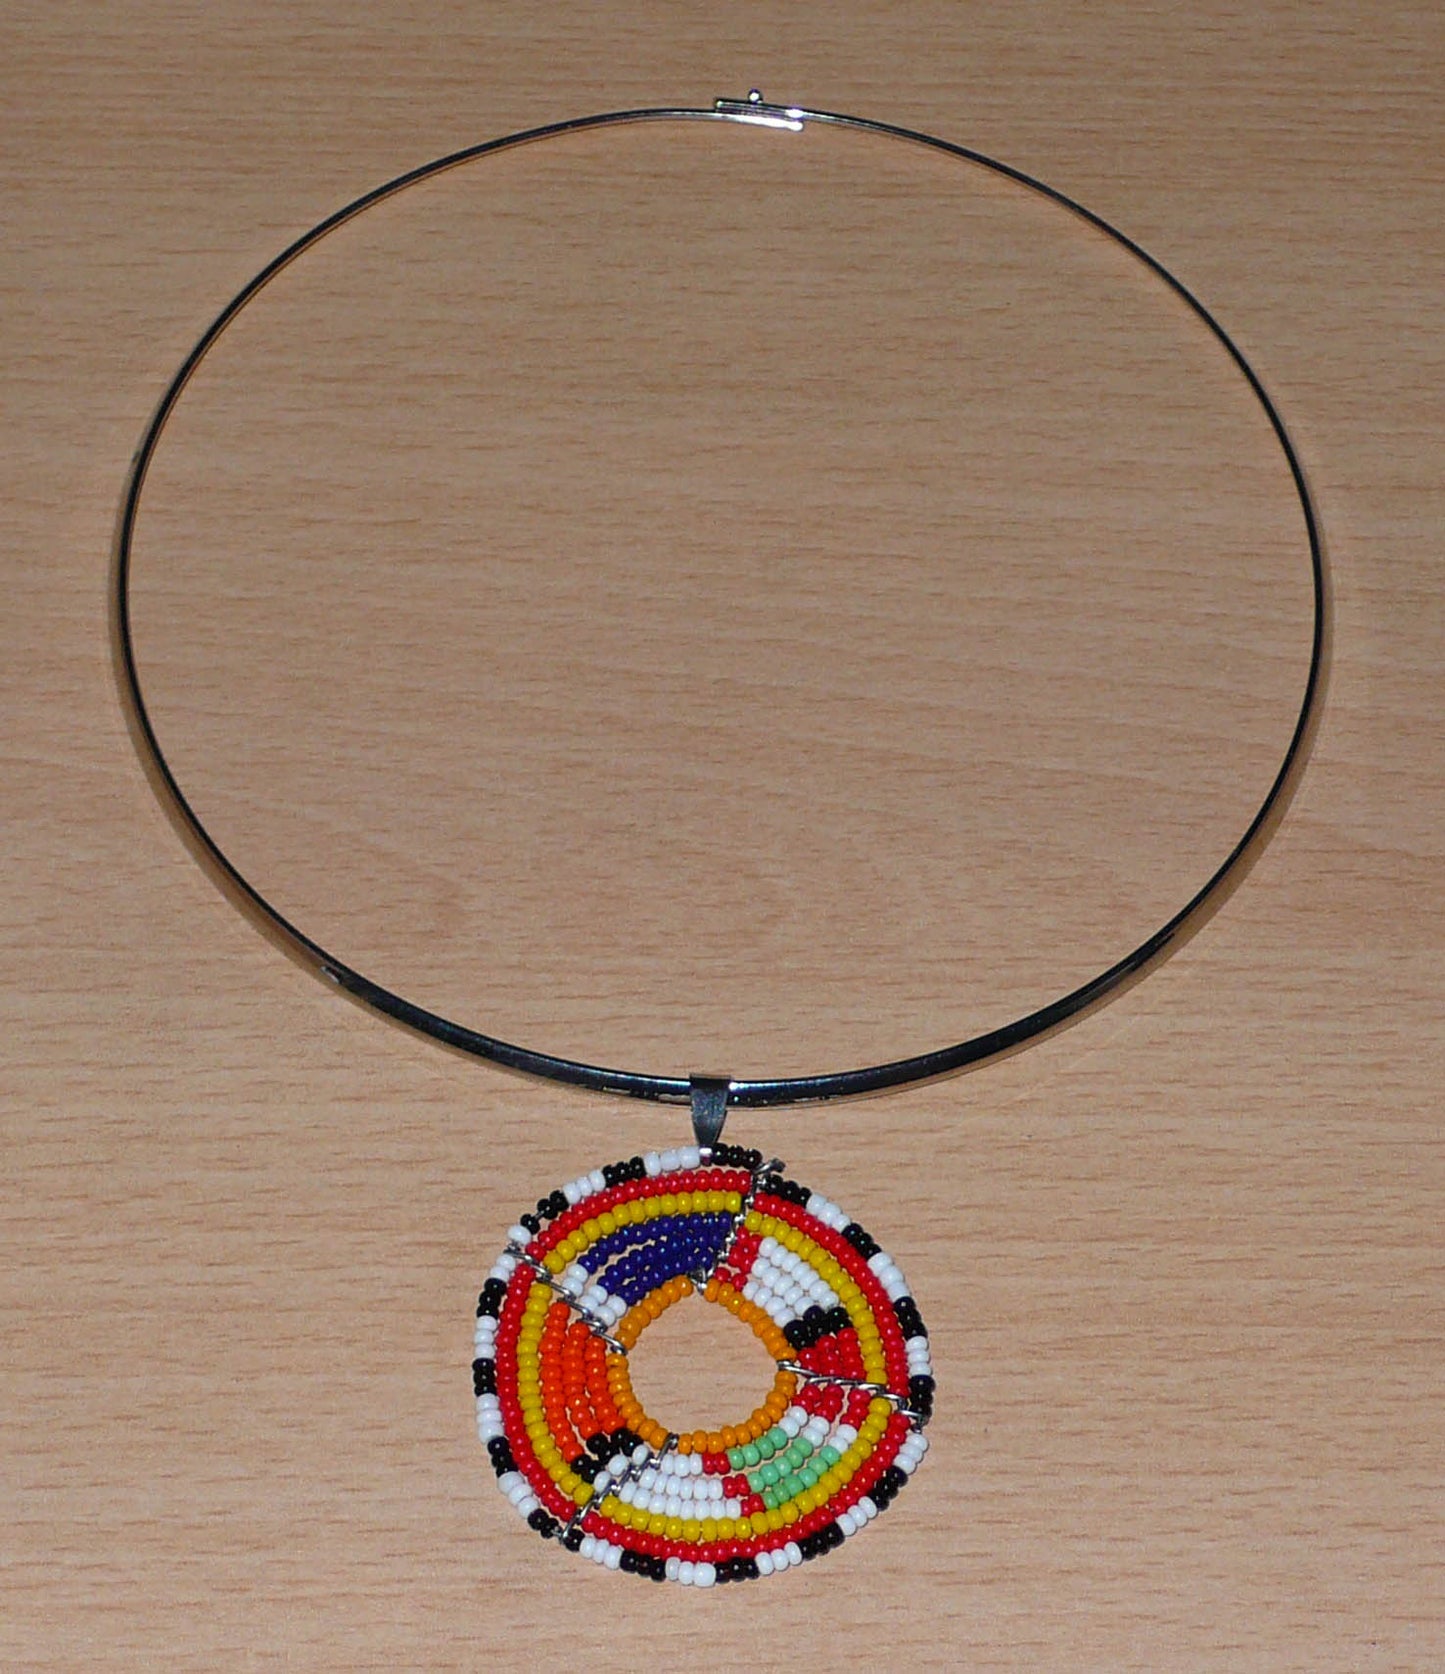 Collier africain composé d'un ras-de-cou en laiton orné d'un médaillon composé de perles de rocaille multicolores. 